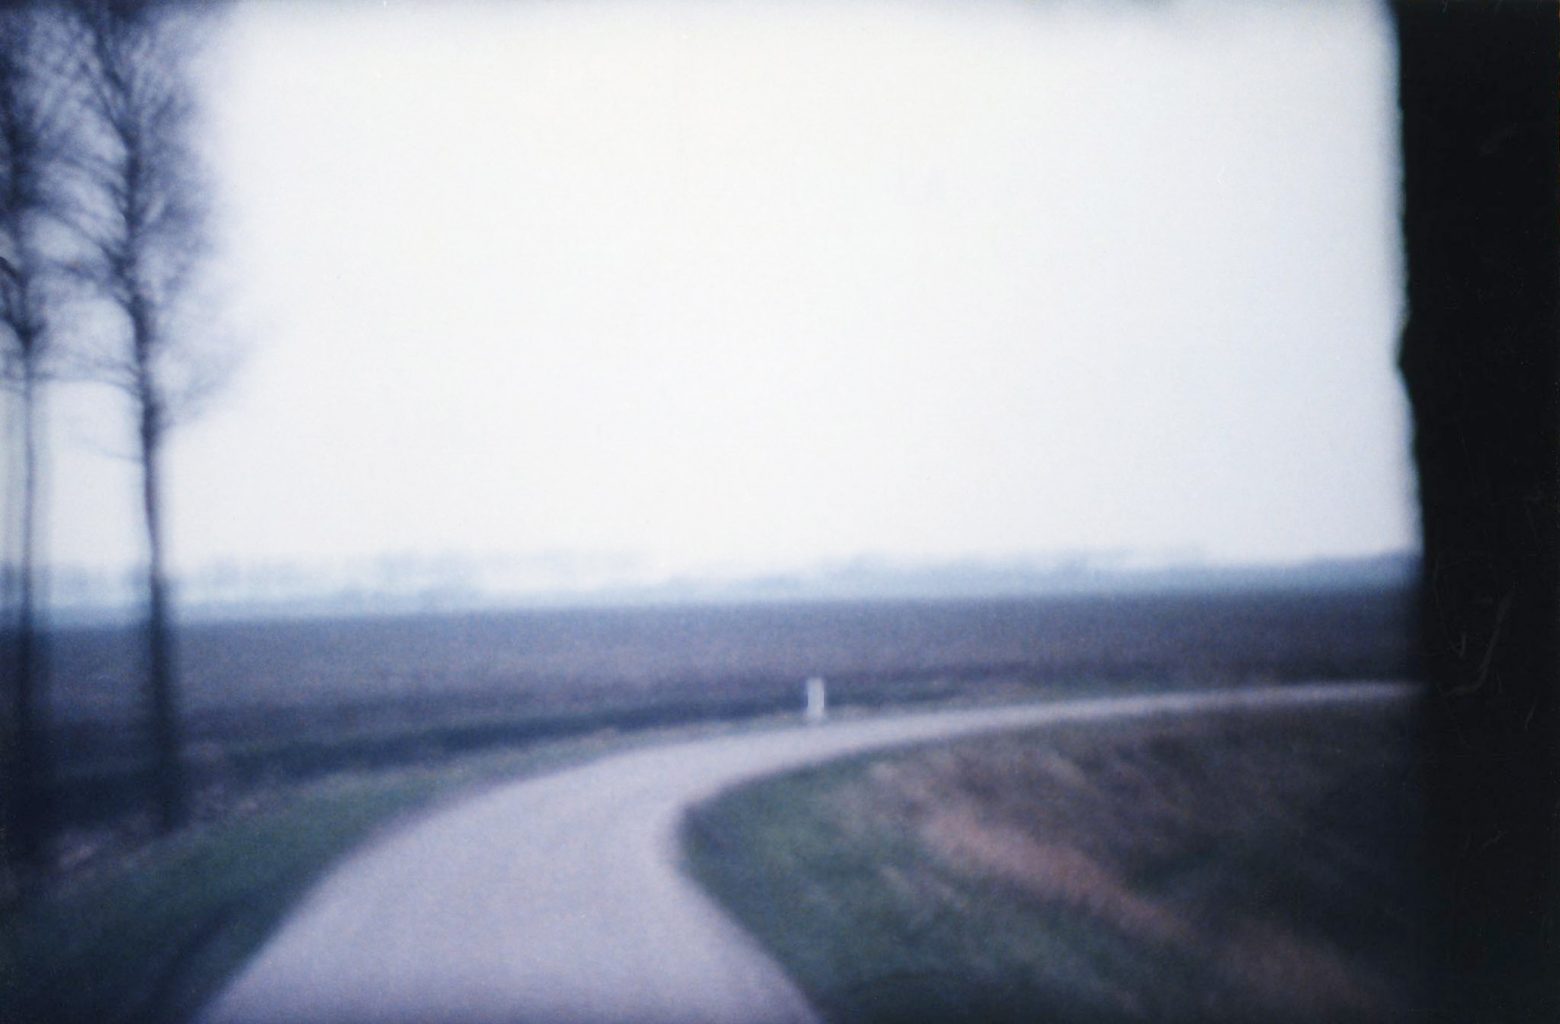 Een deel van de horizon / A part of the horizon. Still from Super8 movie 'Horizon Route, 1980'